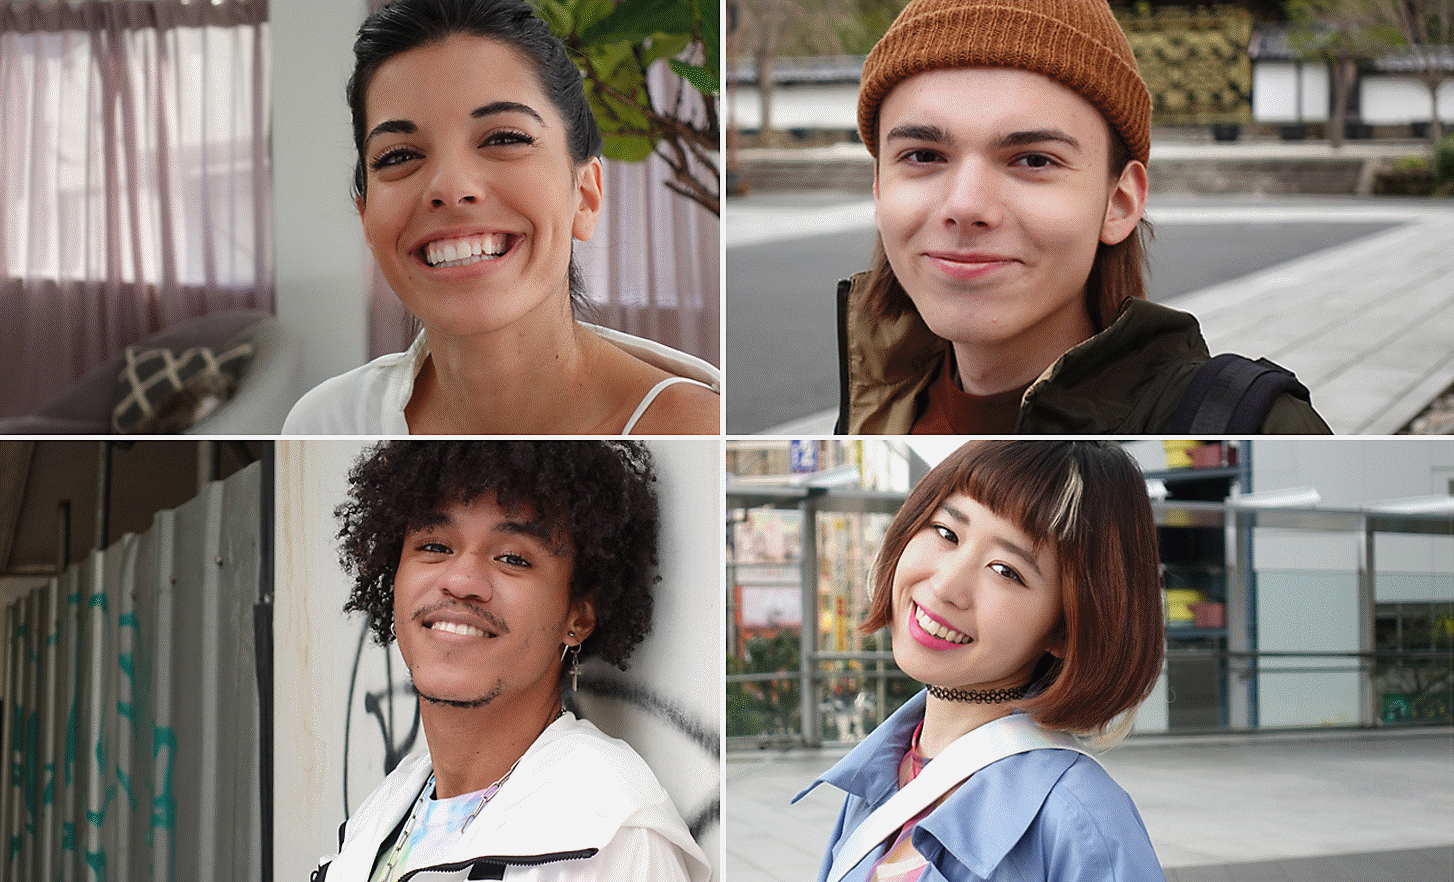 Portrætter af fire smilende personer